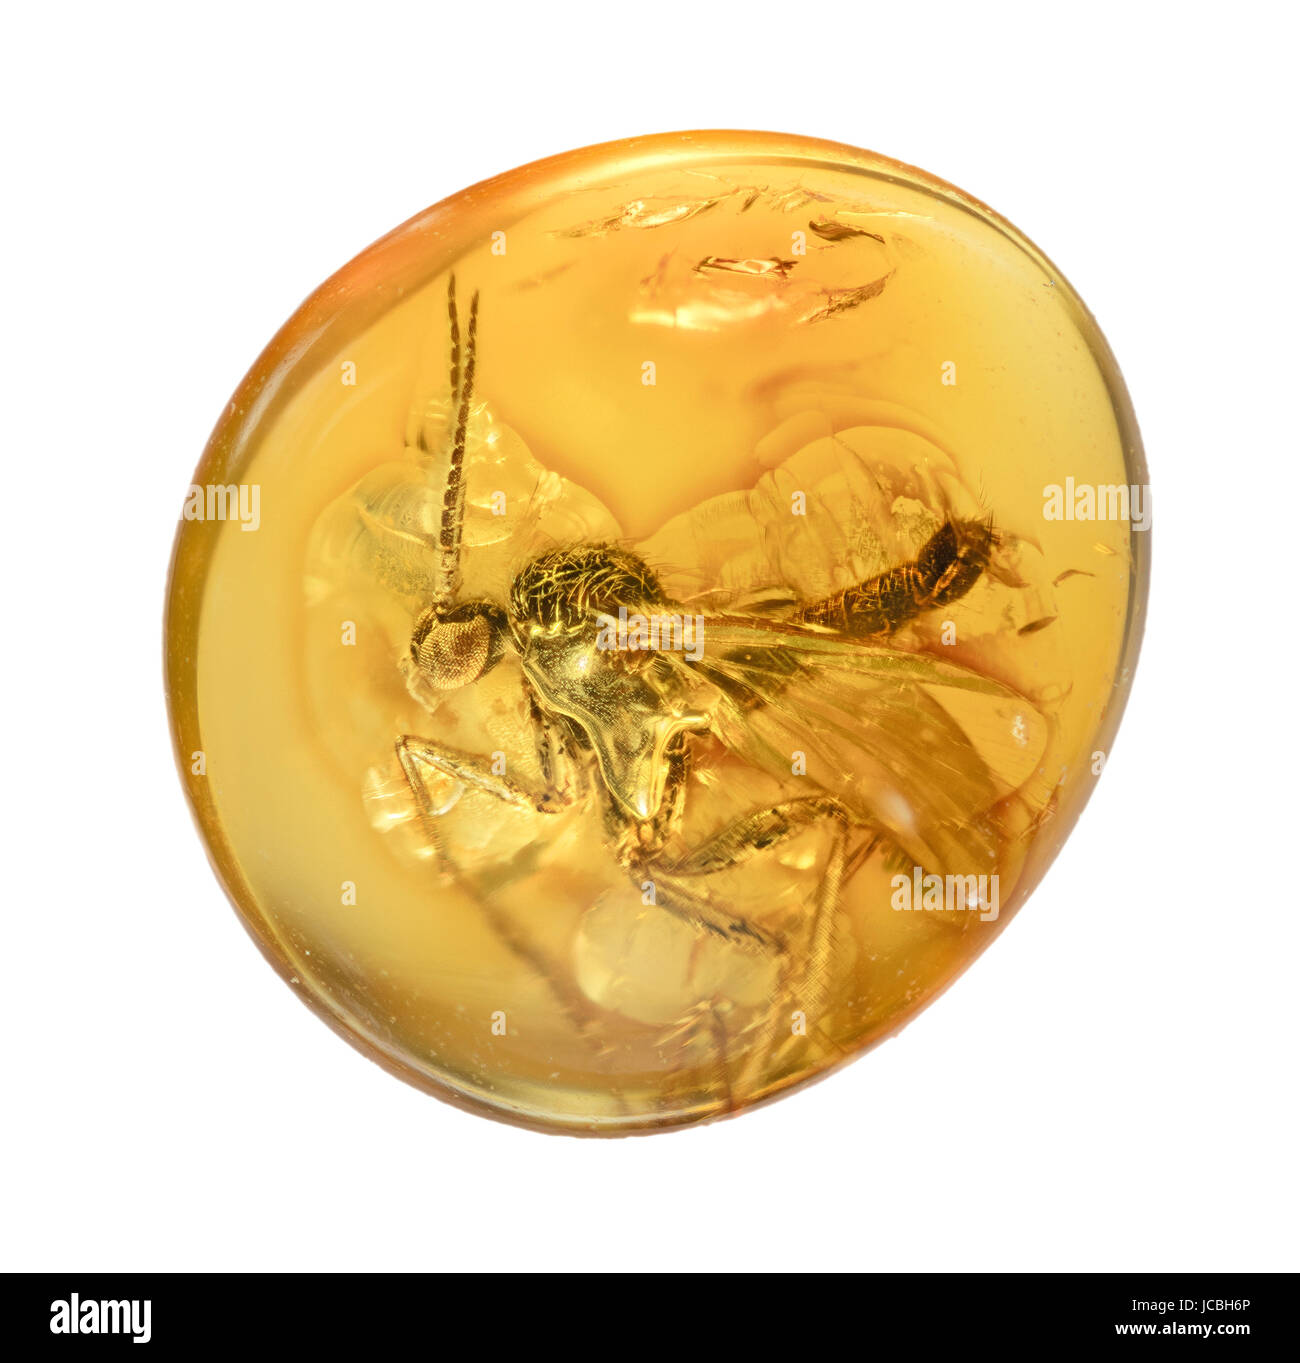 Voler dans l'ambre fossilisé, disque en résine translucide, provenant de conifères disparues de la période tertiaire des fossiles Banque D'Images